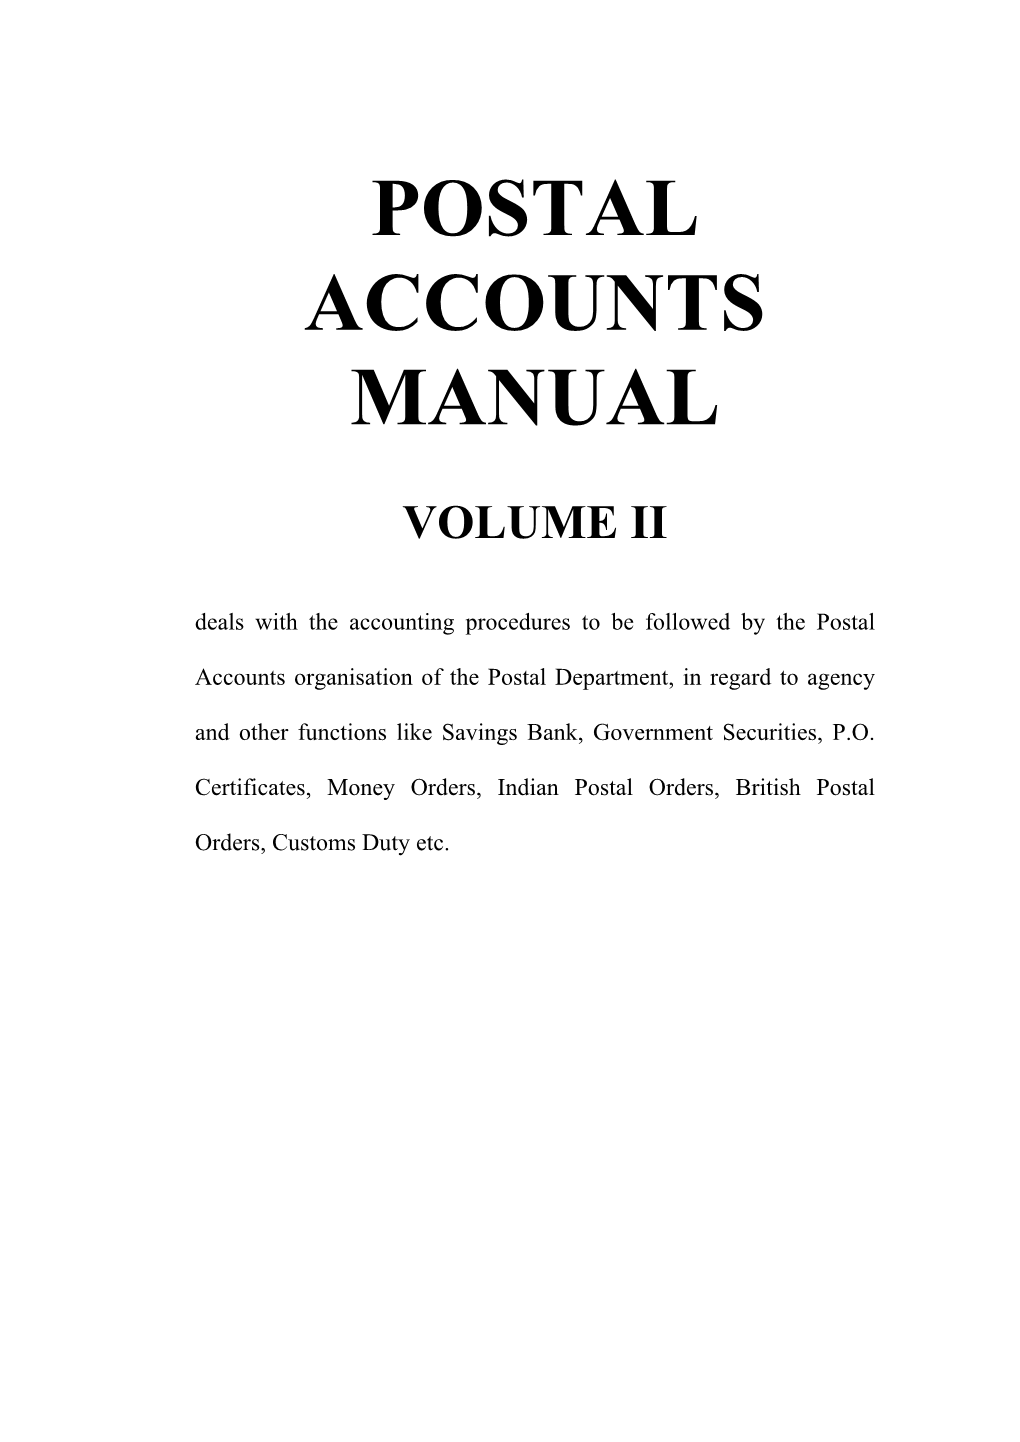 Postal Accounts Manual Vol. II